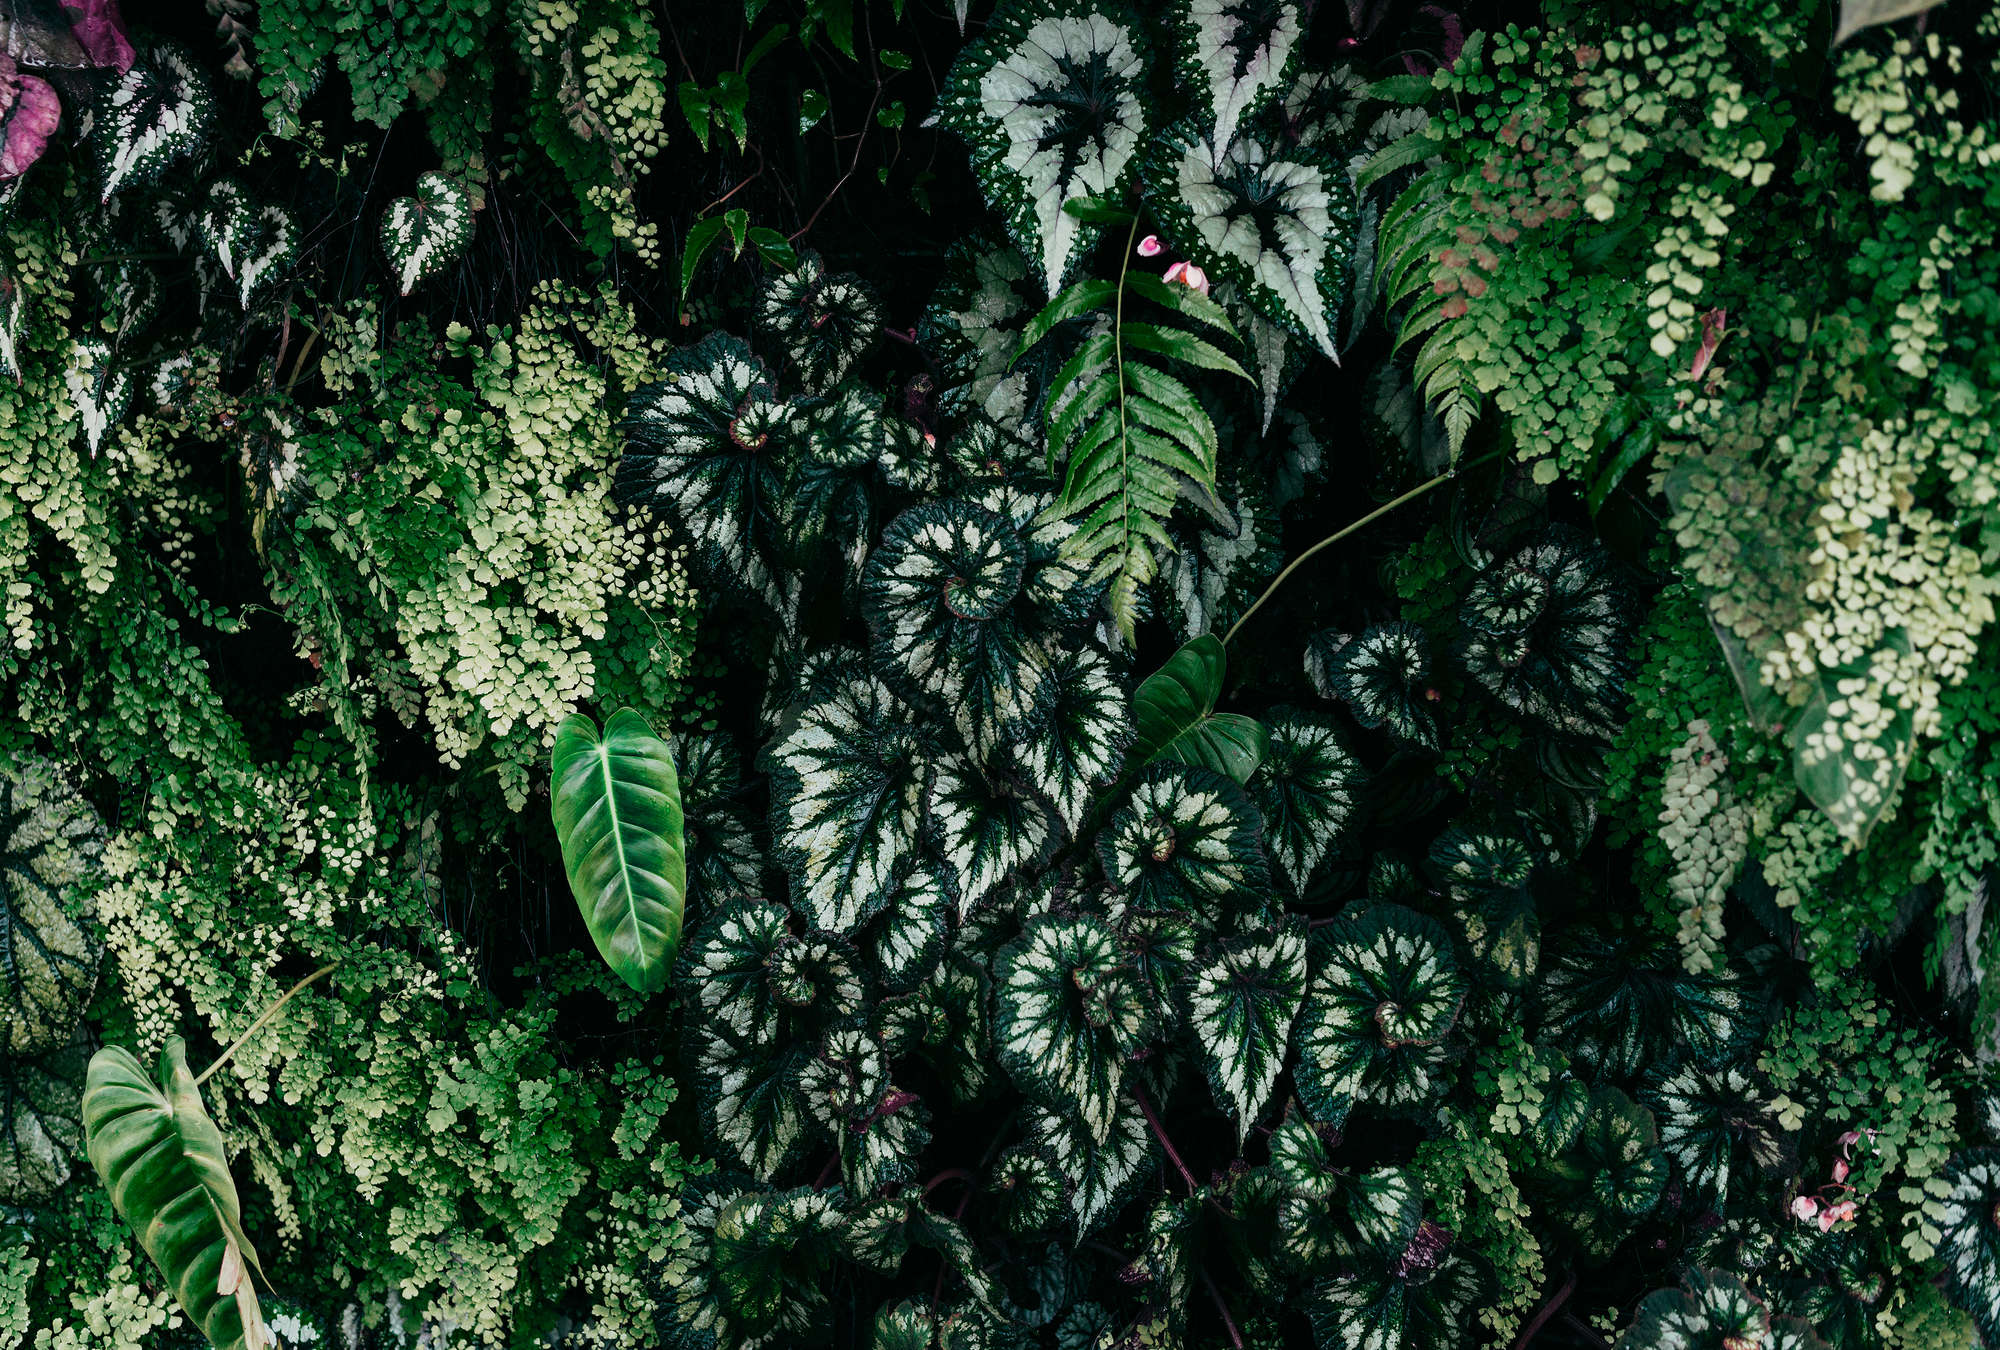             Deep Green 2 - Muurschildering bladstruweel, varens & hangplanten
        